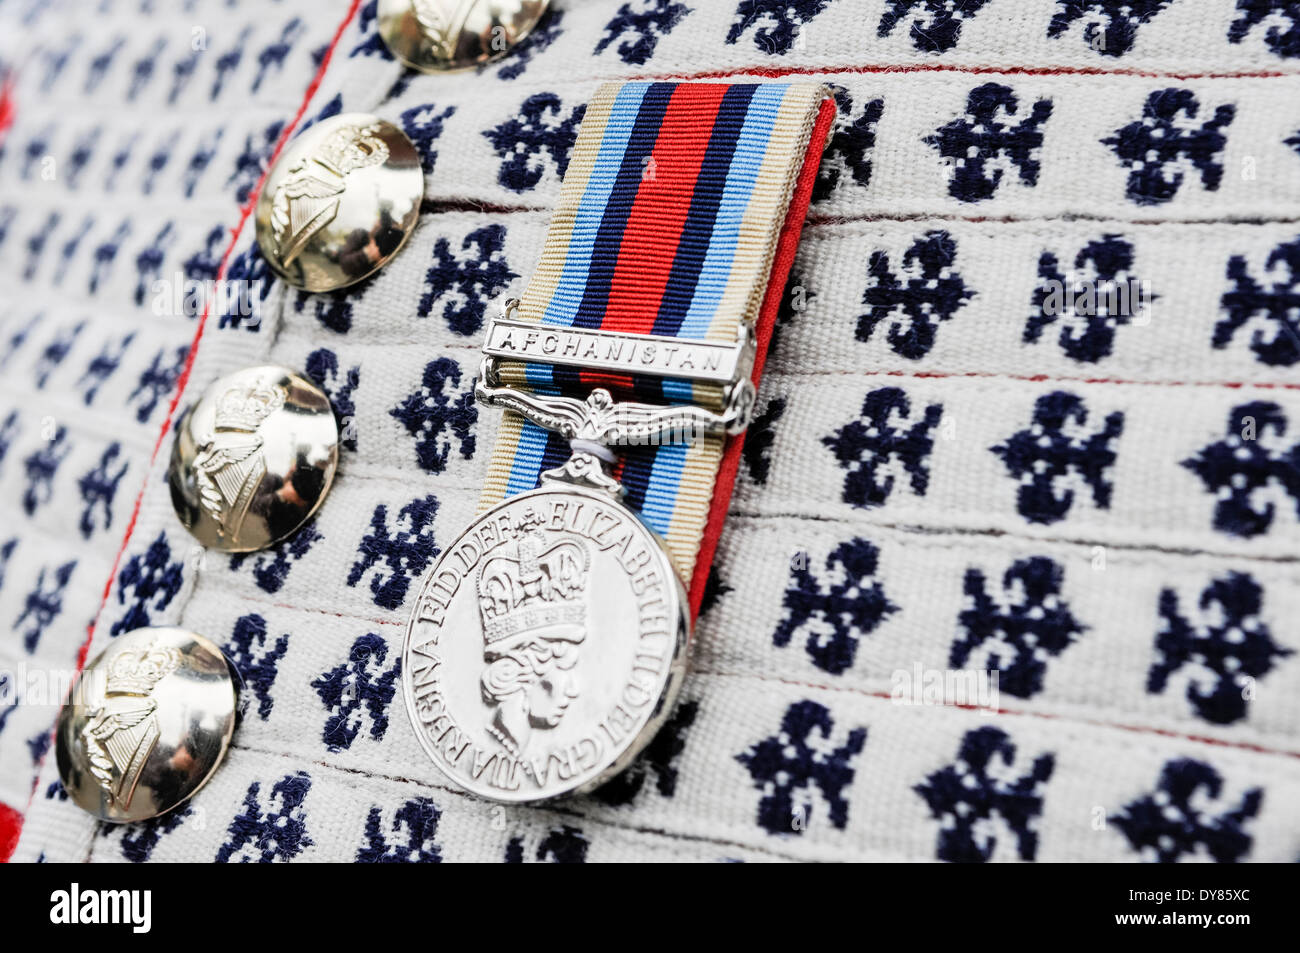 Holywood, Irlande du Nord. 9 avril 2014 - Une médaille de service porté sur l'Afghanistan l'uniforme d'un soldat de l'Irish Guards Crédit : Stephen Barnes/Alamy Live News Banque D'Images